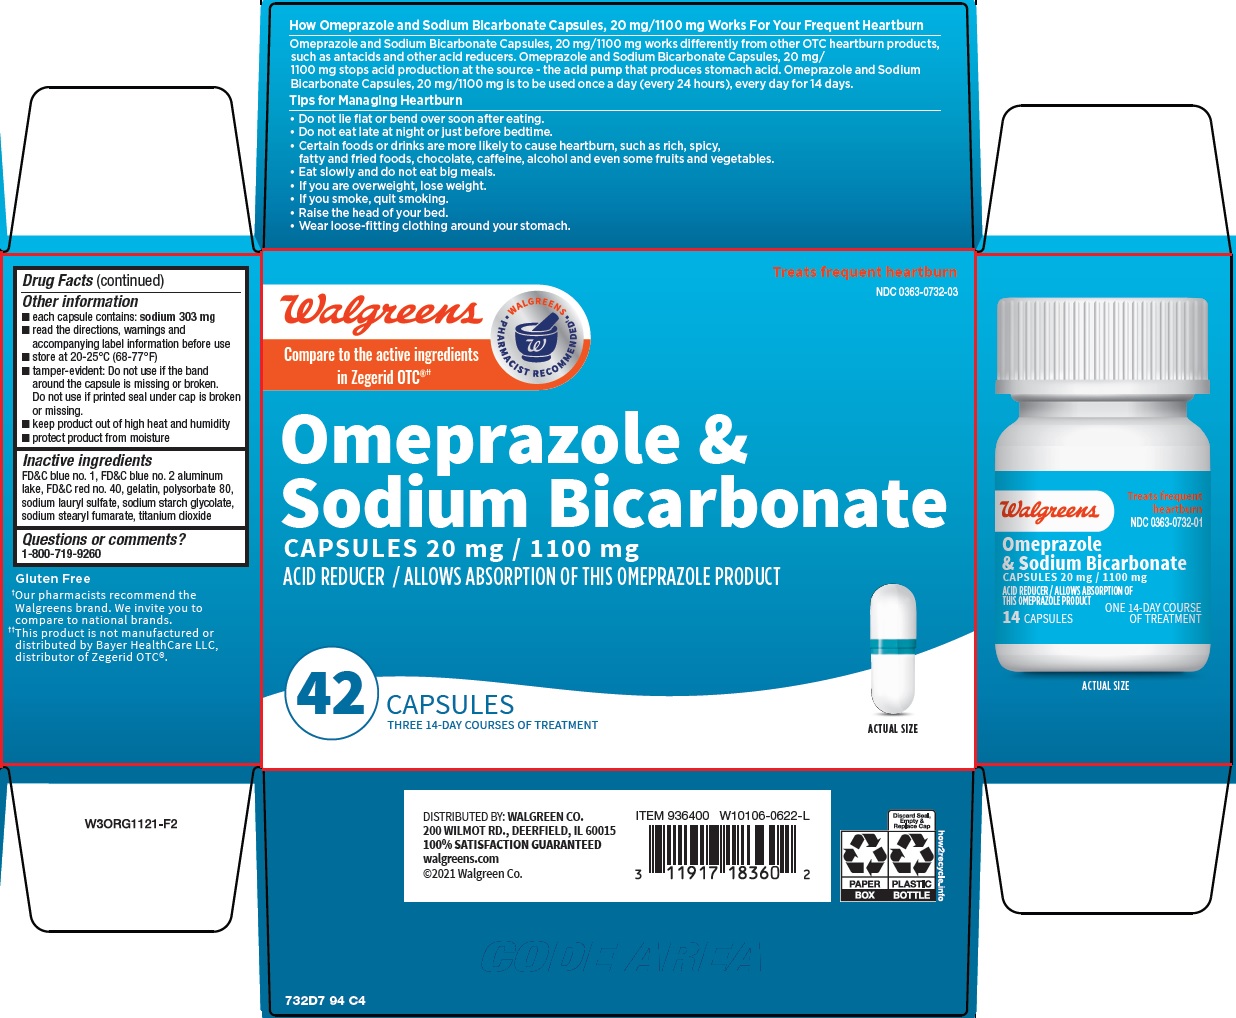 732-94-omeprazole-and-sodium-bicarbonate